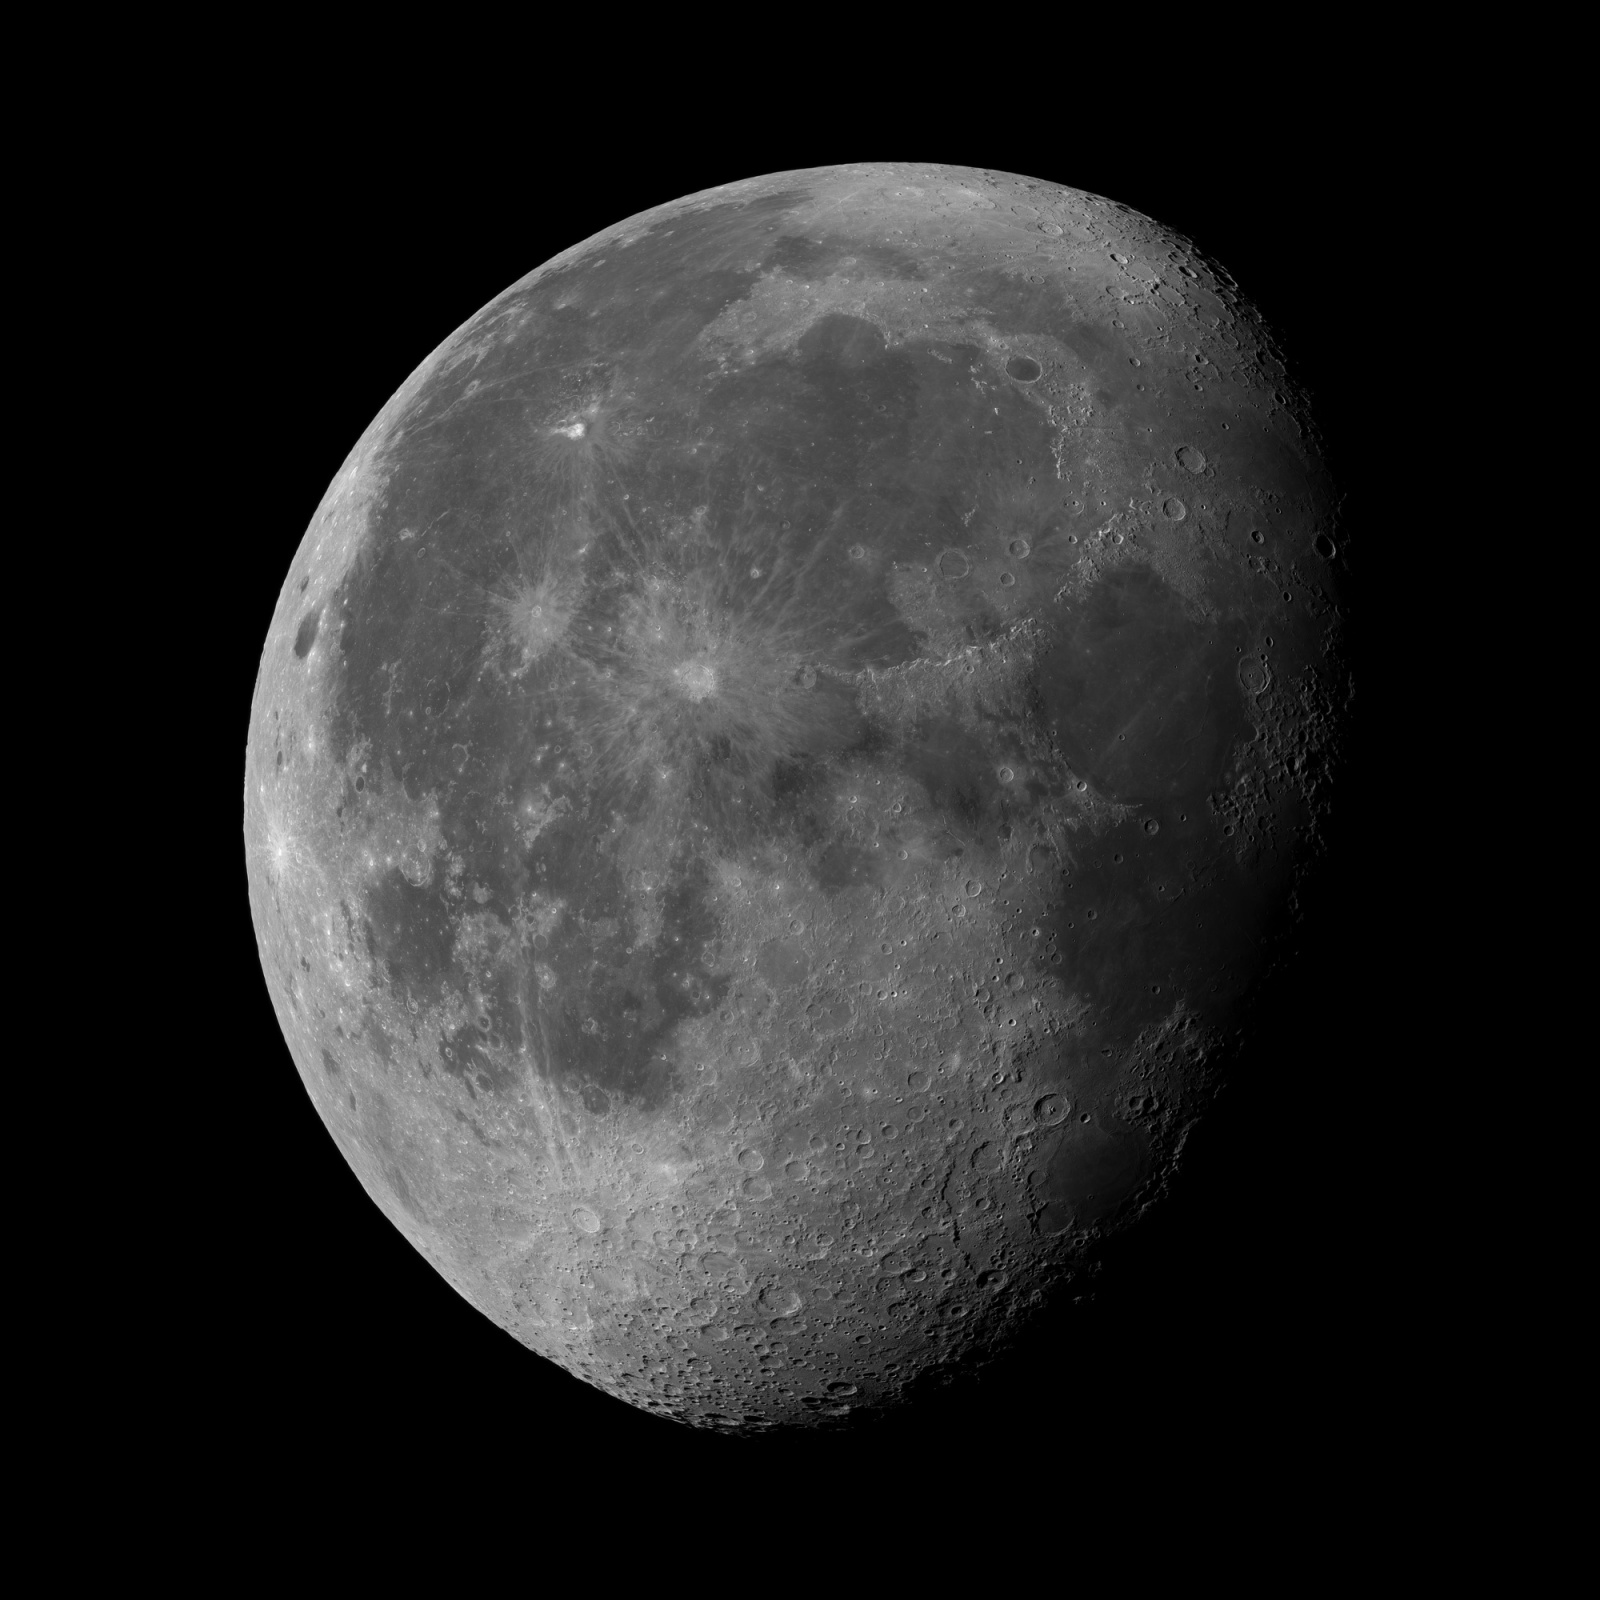 200808-moon-mono.thumb.jpg.48d8bd18d842d8c9394173e14fda7c36.jpg